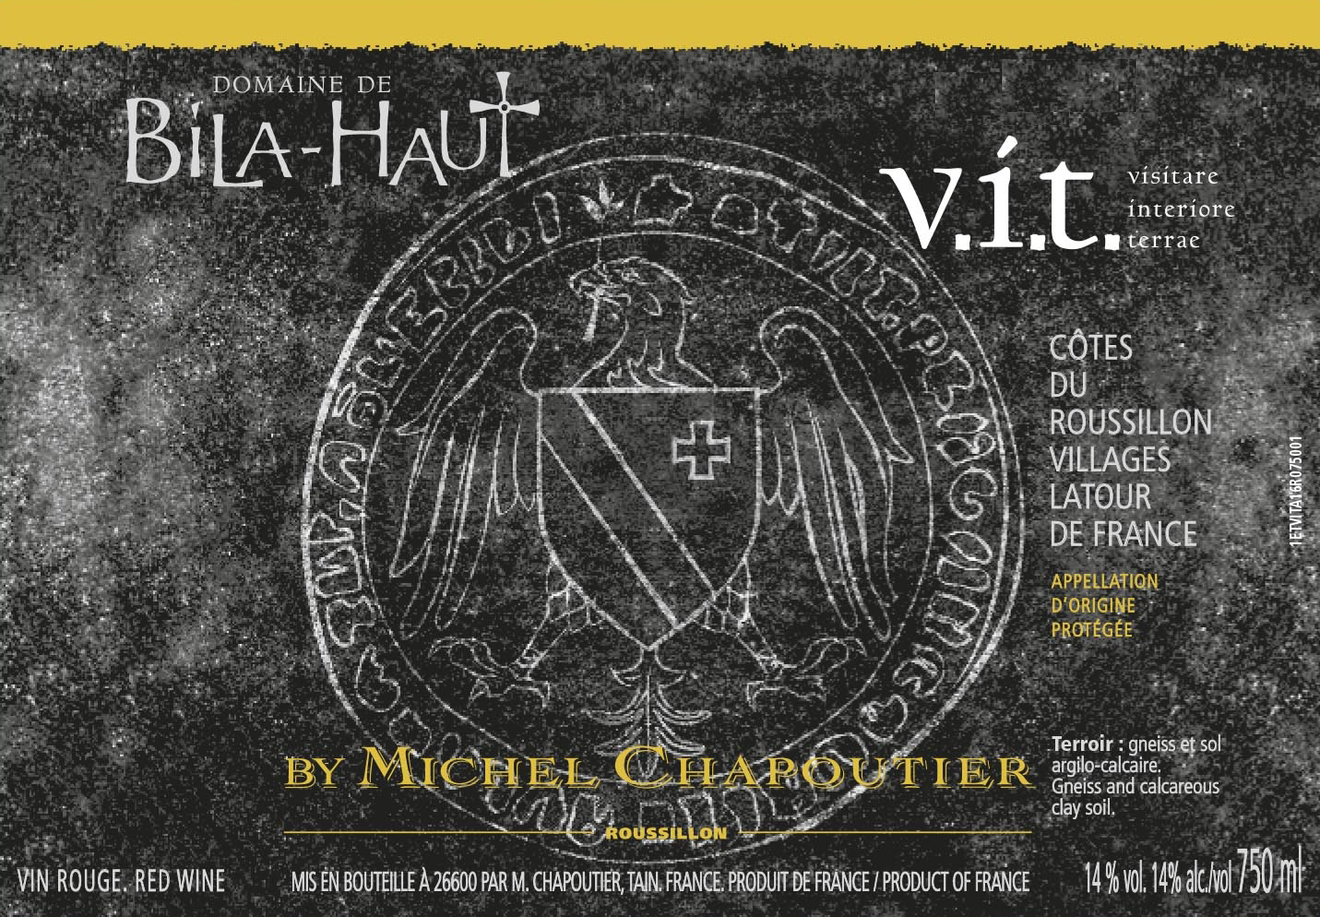 Domaine de Bila-Haut Latour de France - V.I.T. label